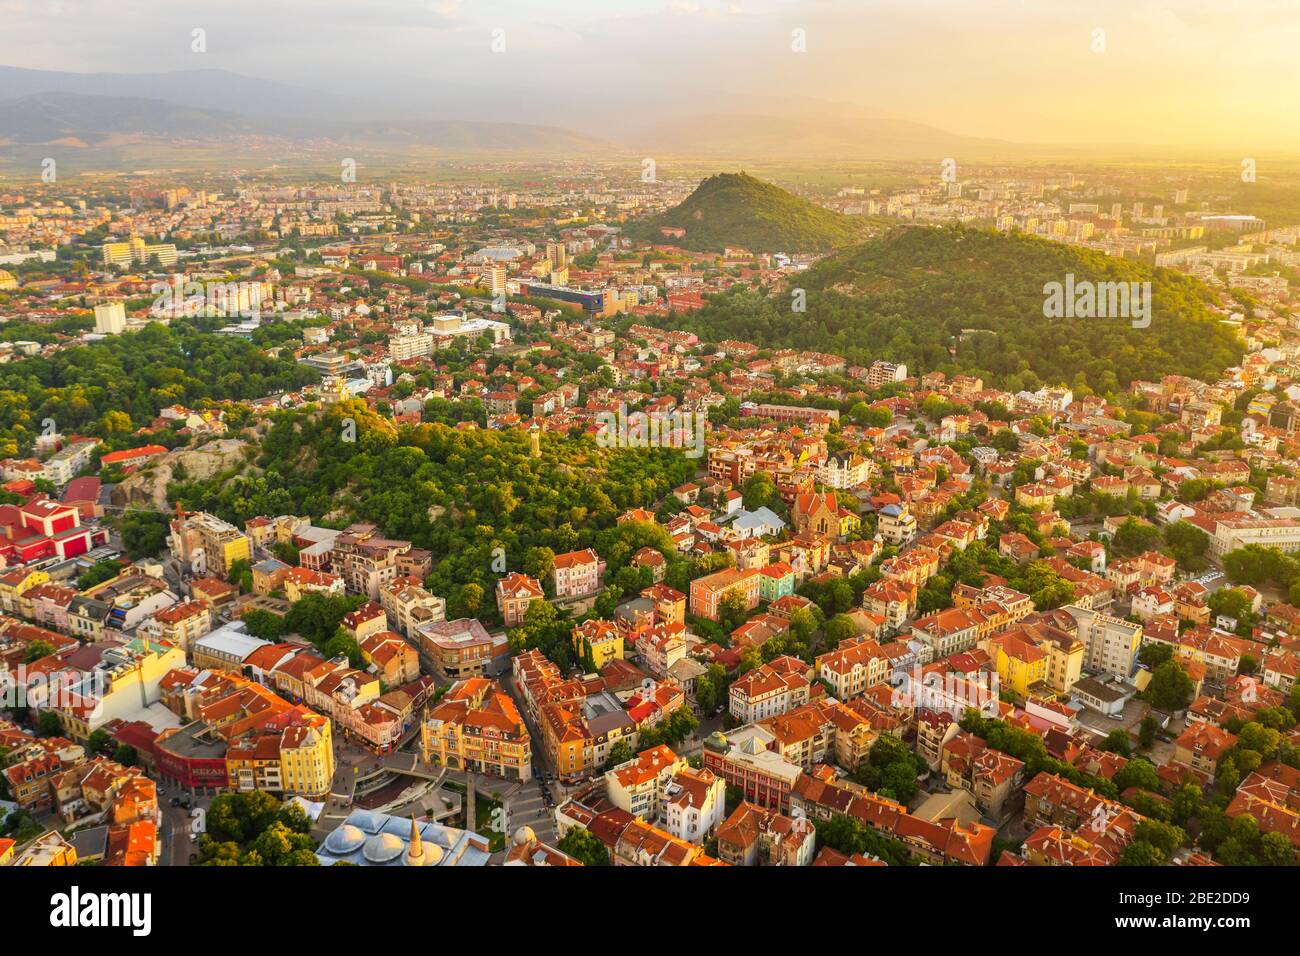 Europa, Bulgaria, vista aérea del centro de la ciudad de Plovdiv Foto de stock